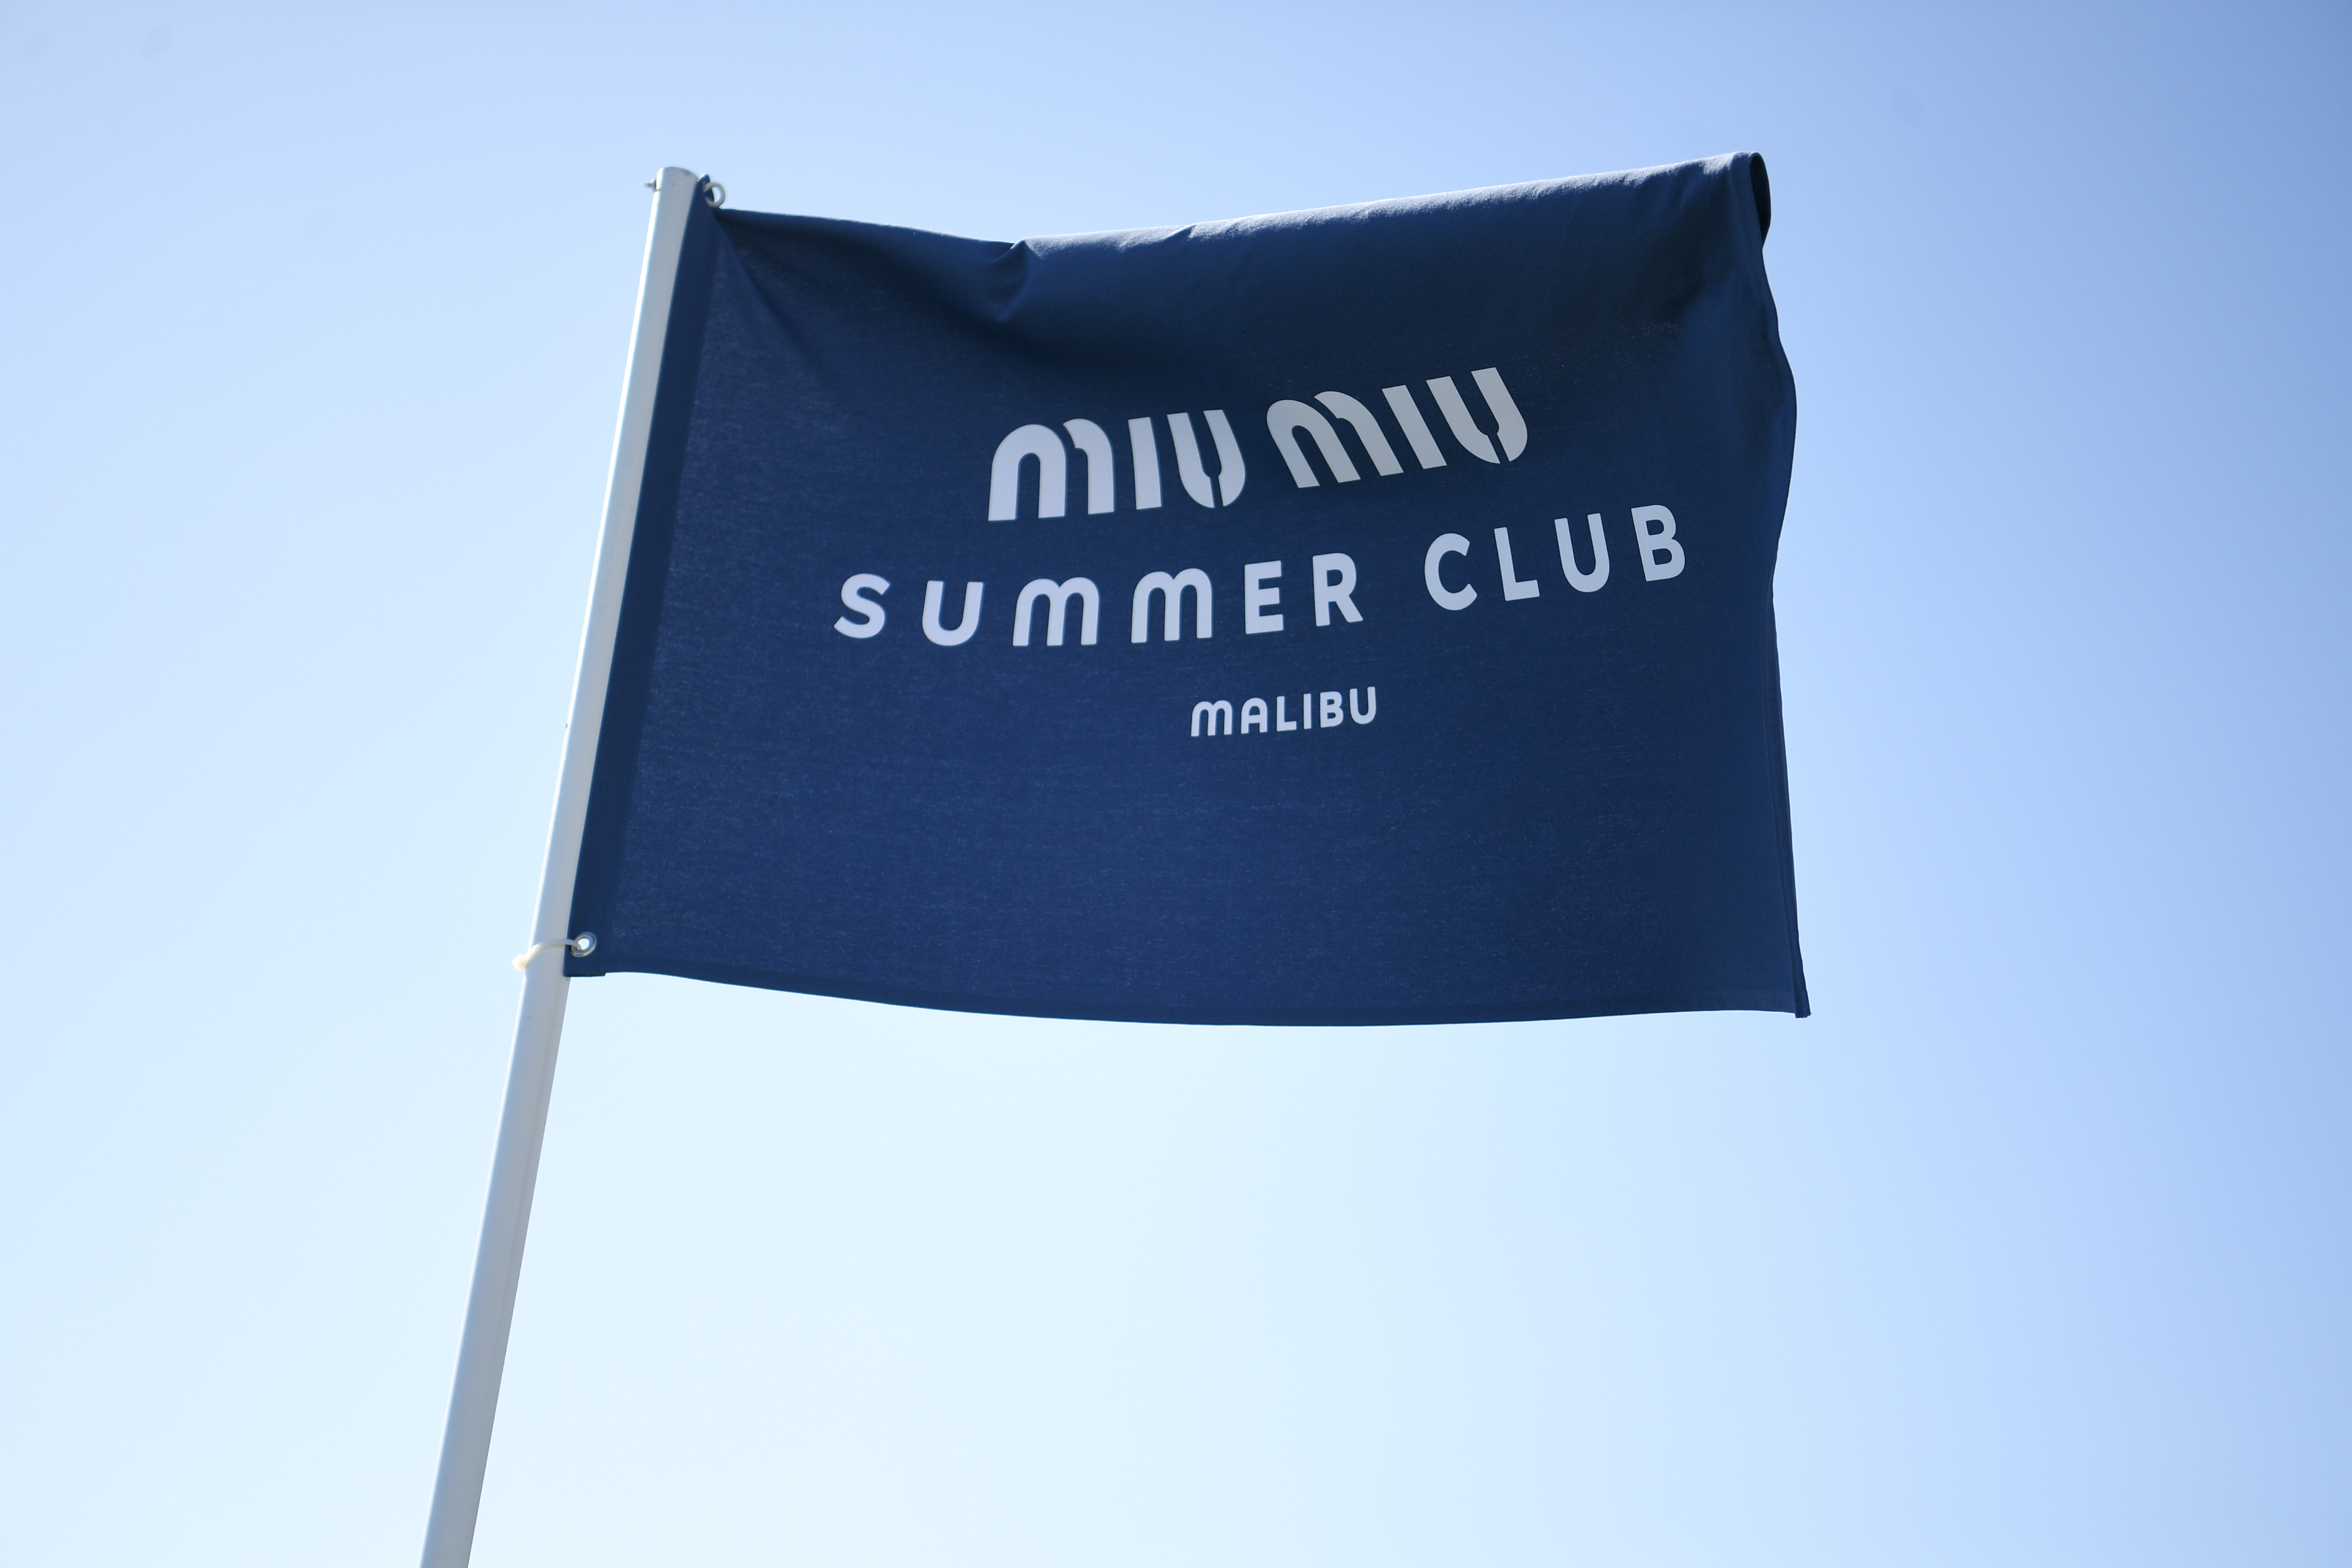 Miu Miu Summer Club party